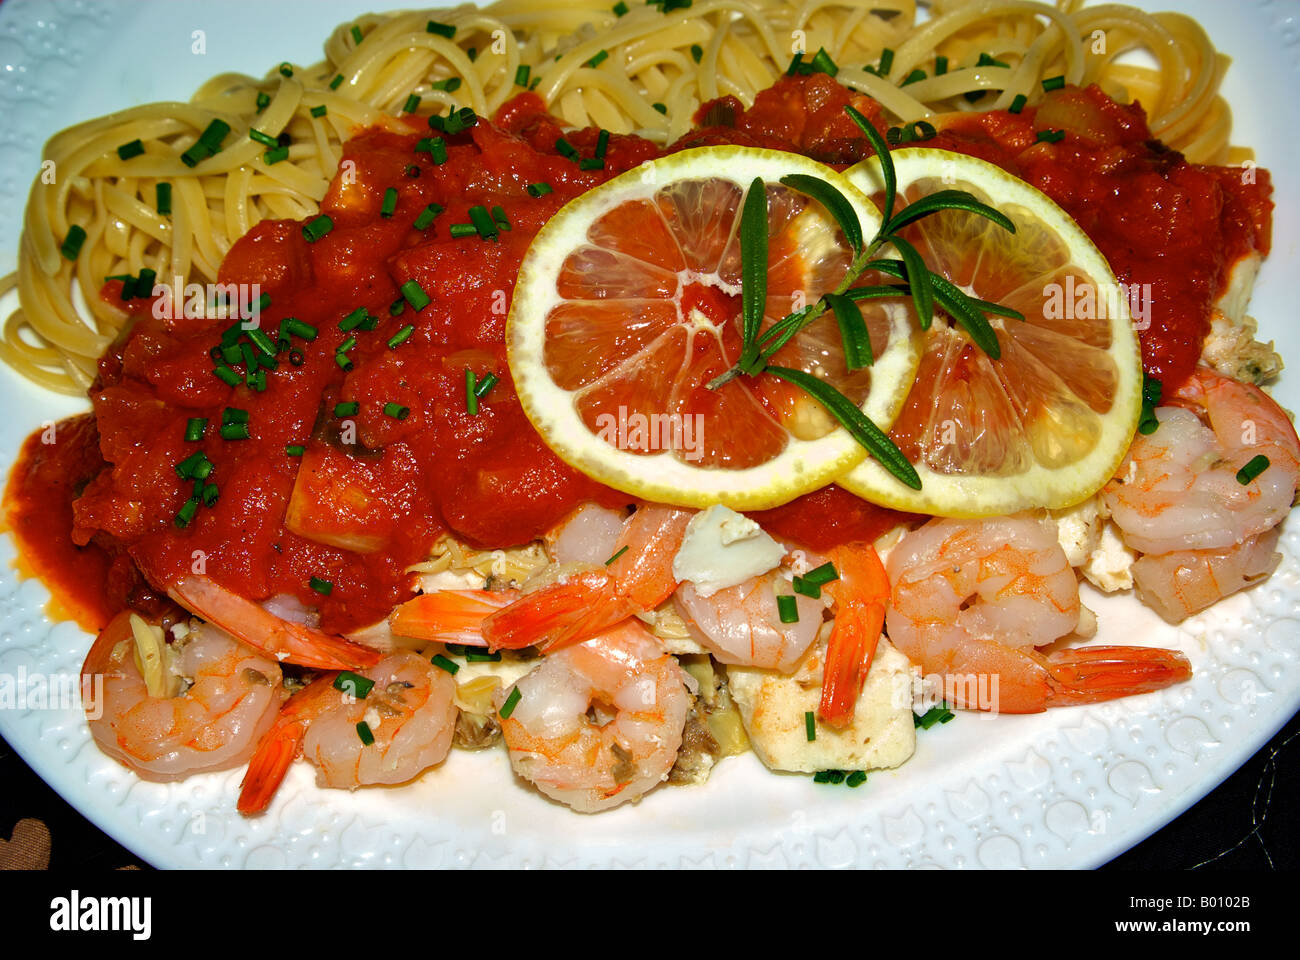 Fischgericht Linguine mit Garnelen, Heilbutt und Muscheln in einer reichhaltigen Tomatensauce mit Zitrone, Knoblauch, Zwiebeln, Schnittlauch und Frühlingszwiebeln. Stockfoto